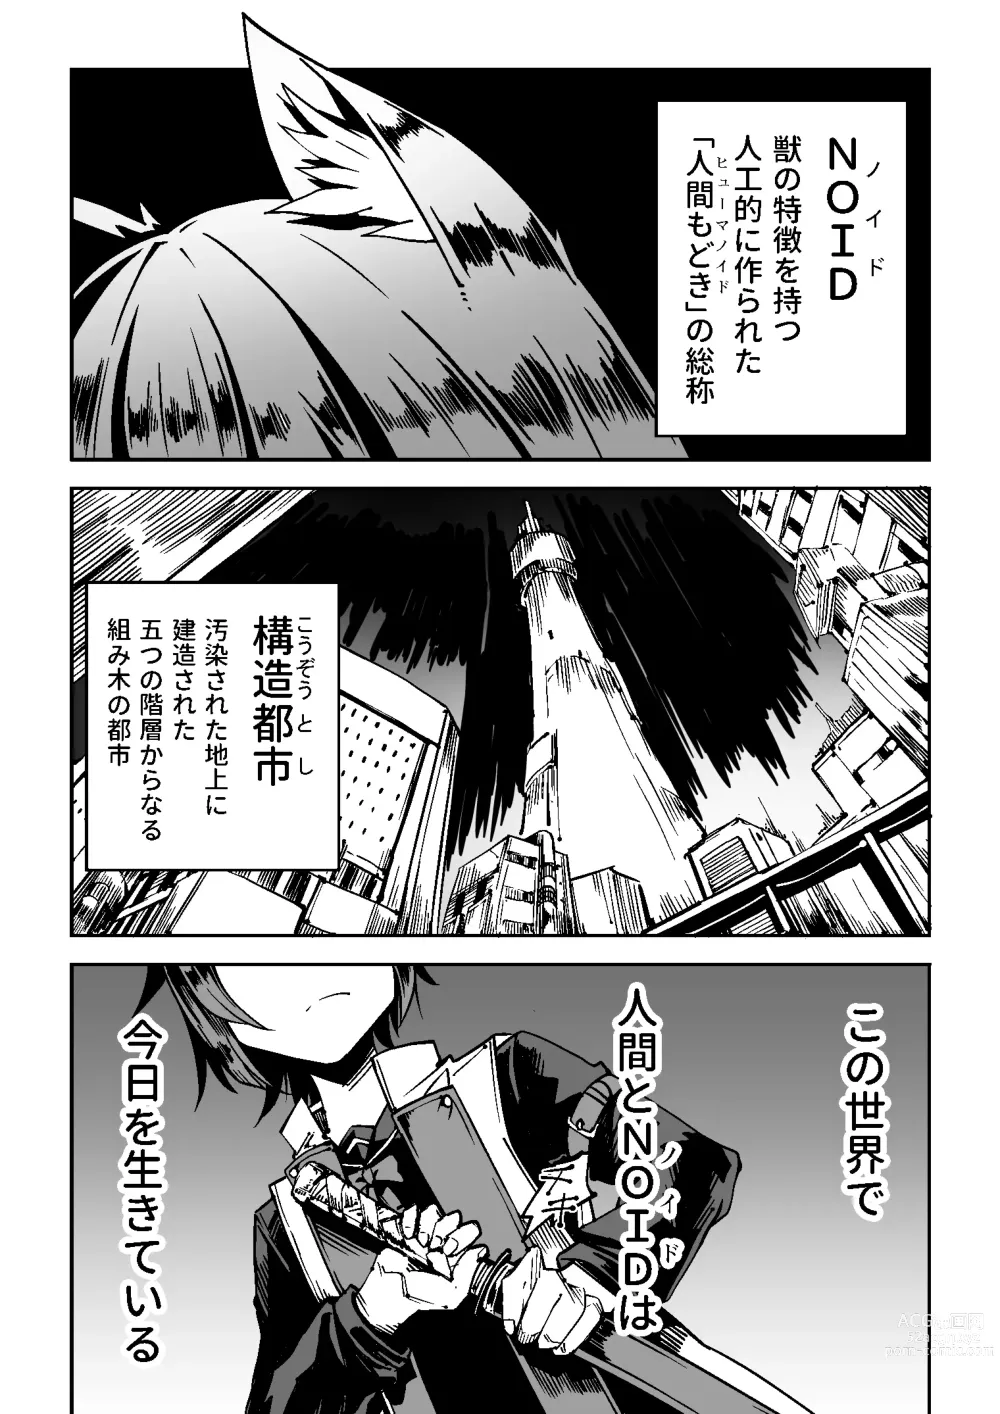 Page 2 of doujinshi NOID Episode:Julius